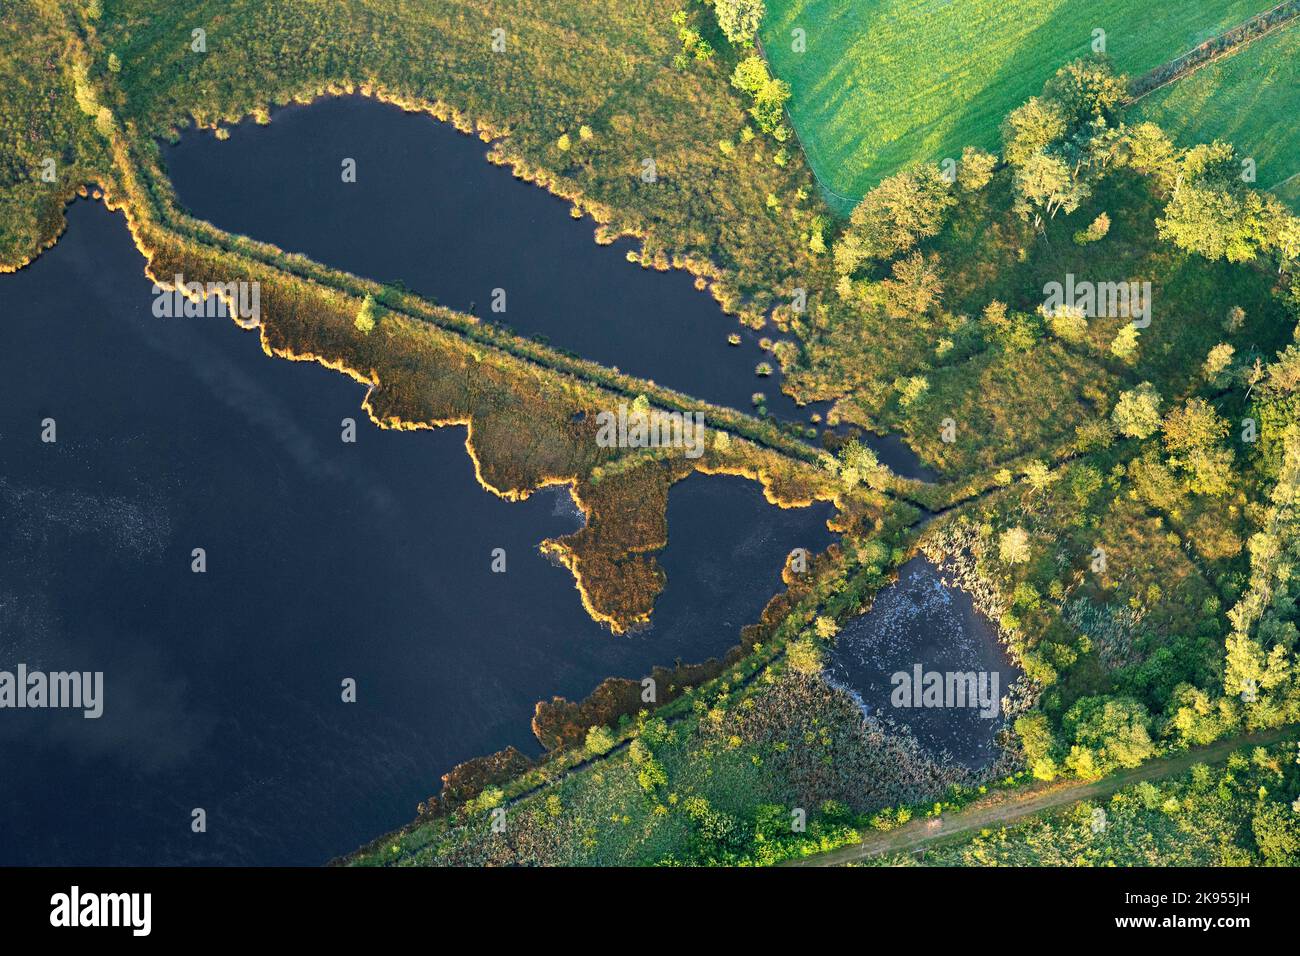 Vue aérienne de la réserve naturelle de Stappersven-Kalmthoutse Heide, Belgique, Anvers, Kalmthout, Kalmthoutse heide Banque D'Images